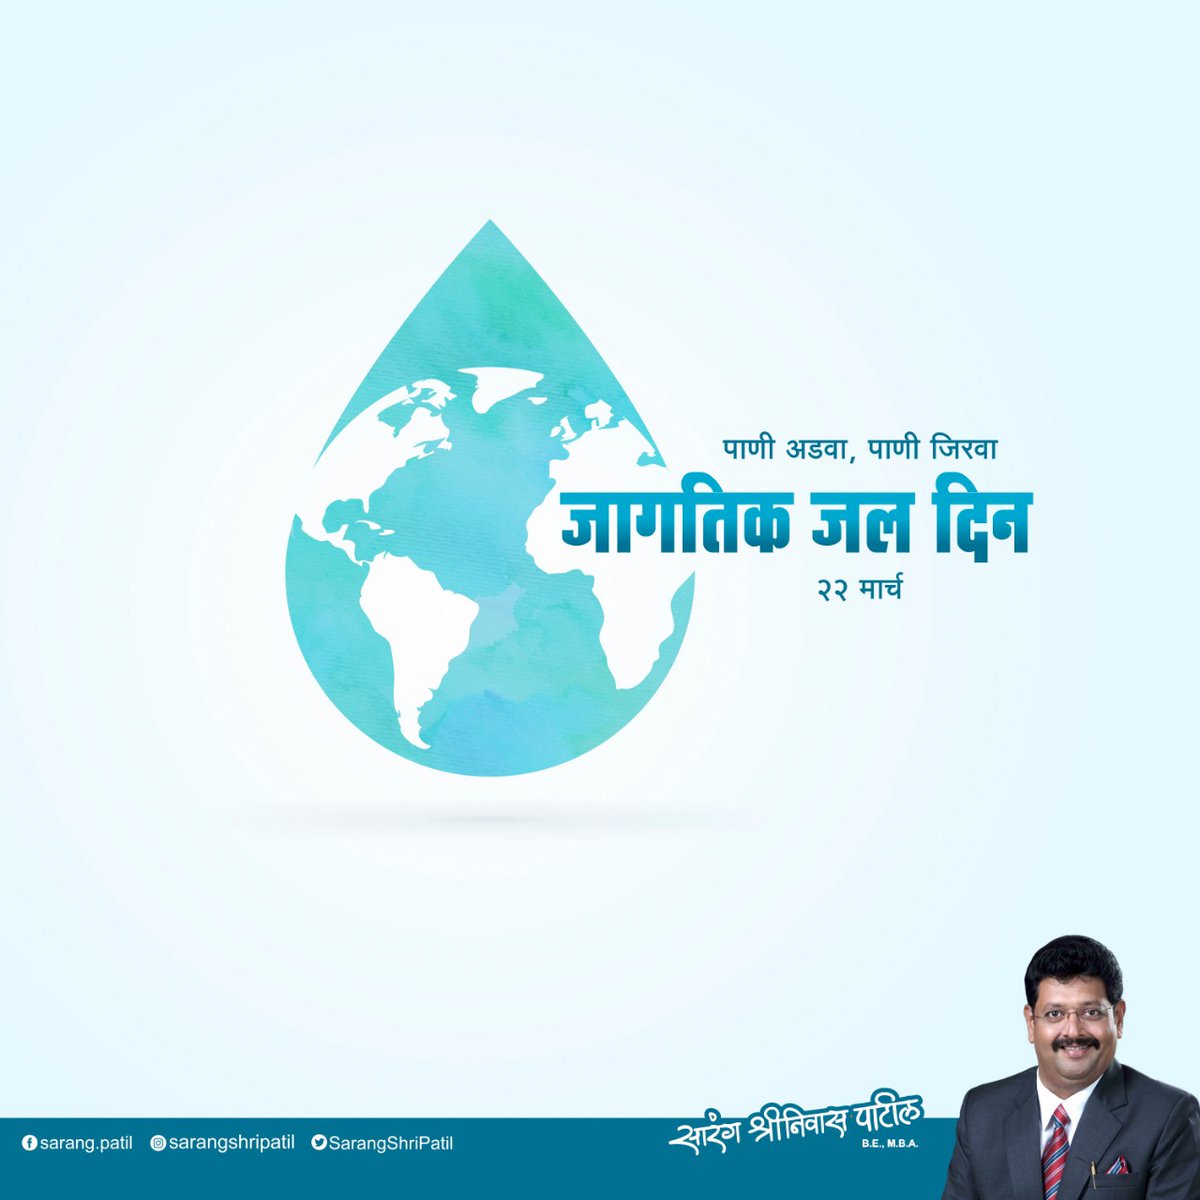 पाणी म्हणजे जीवन. चला तर मग जागतिक जल दिनाचे औचित्य साधत पाणी बचतीचा आणि जलप्रदुषण टाळण्याचा संकल्प करुया.